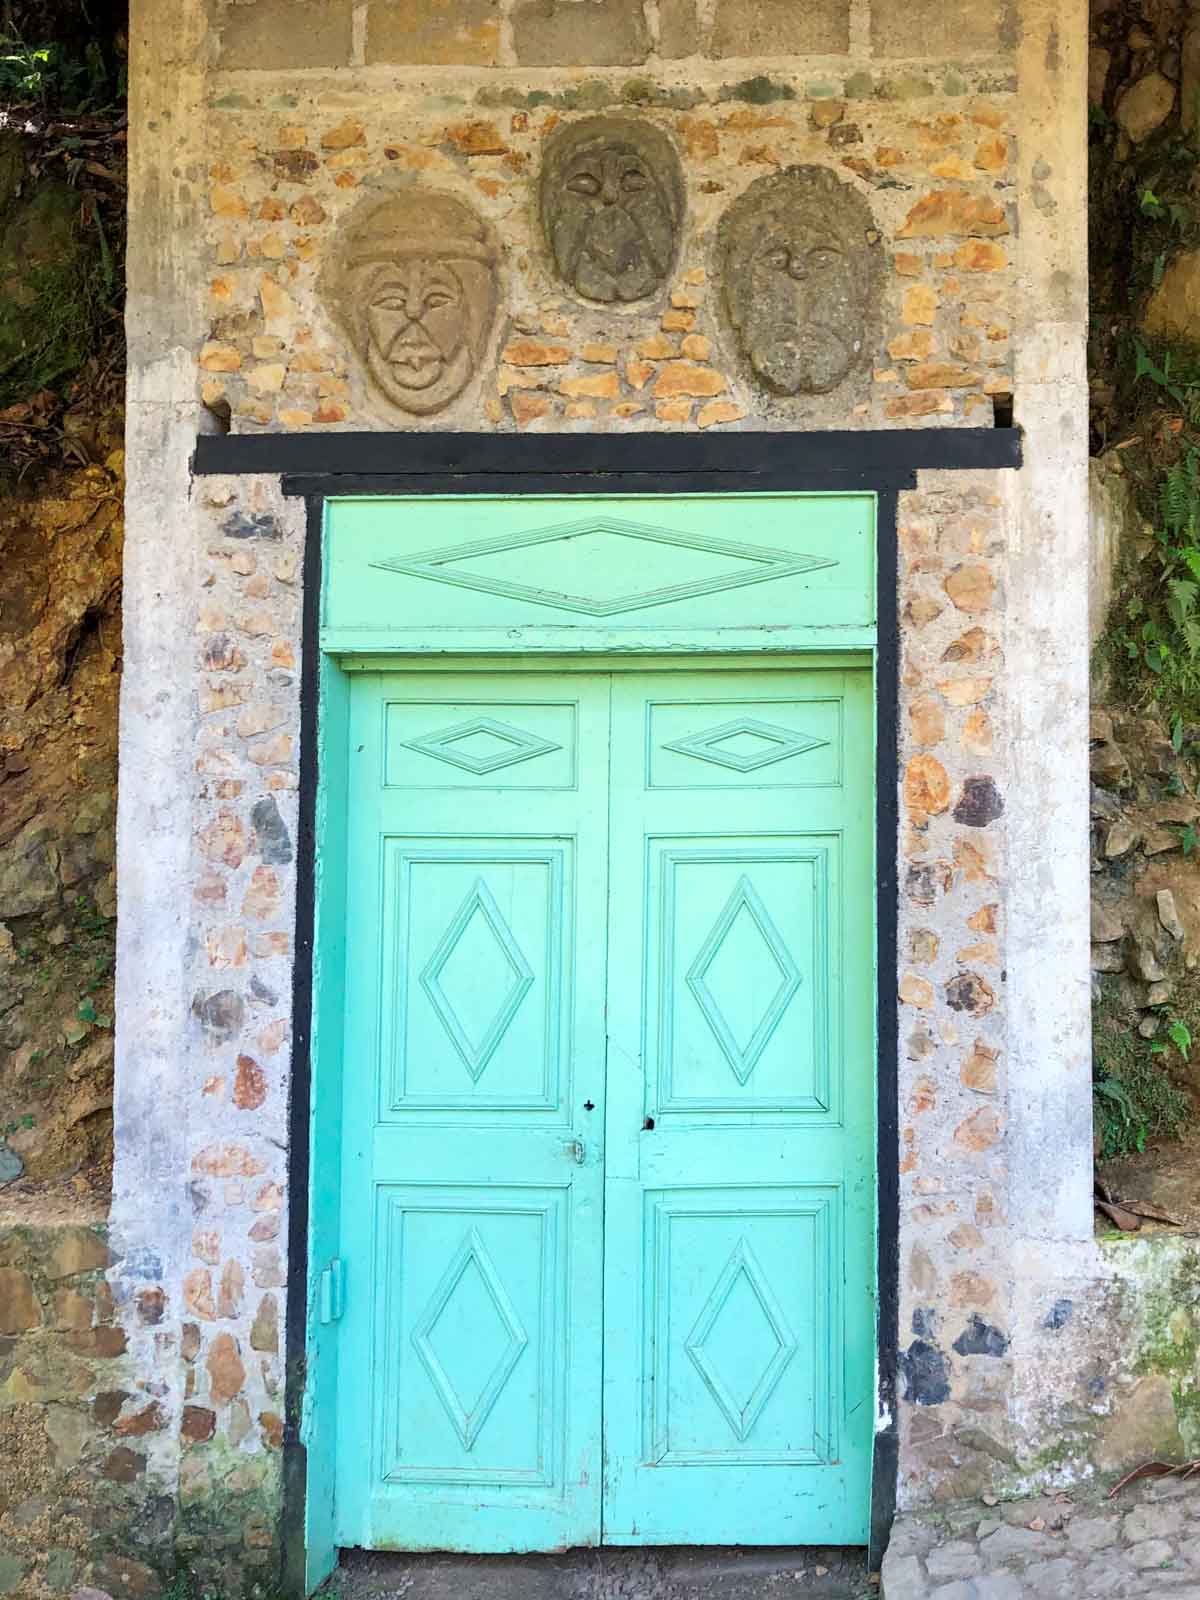 The green door to the bats in Jardin, Colombia.